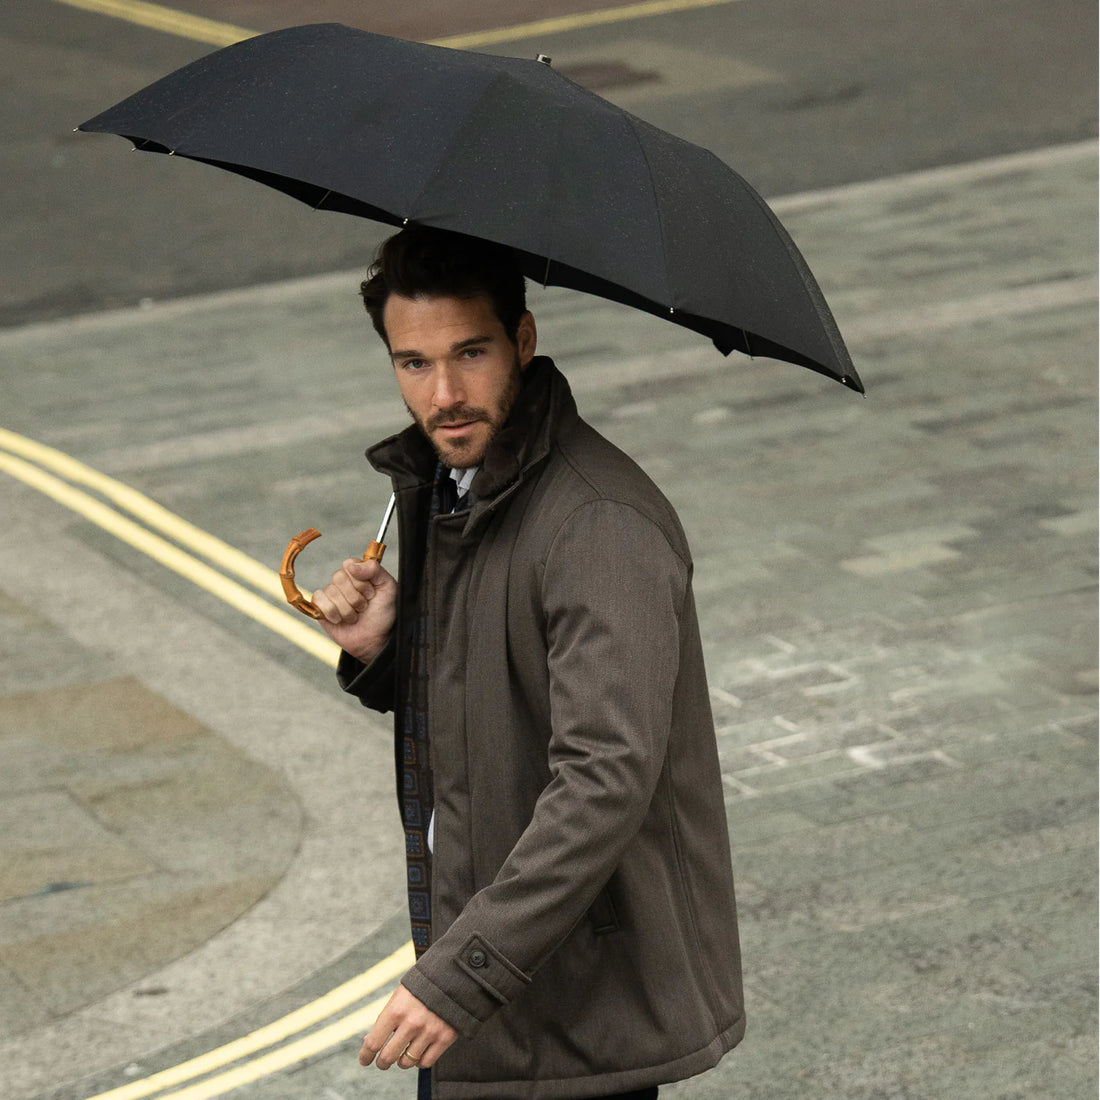 Man holding an umbrella walking on a street.